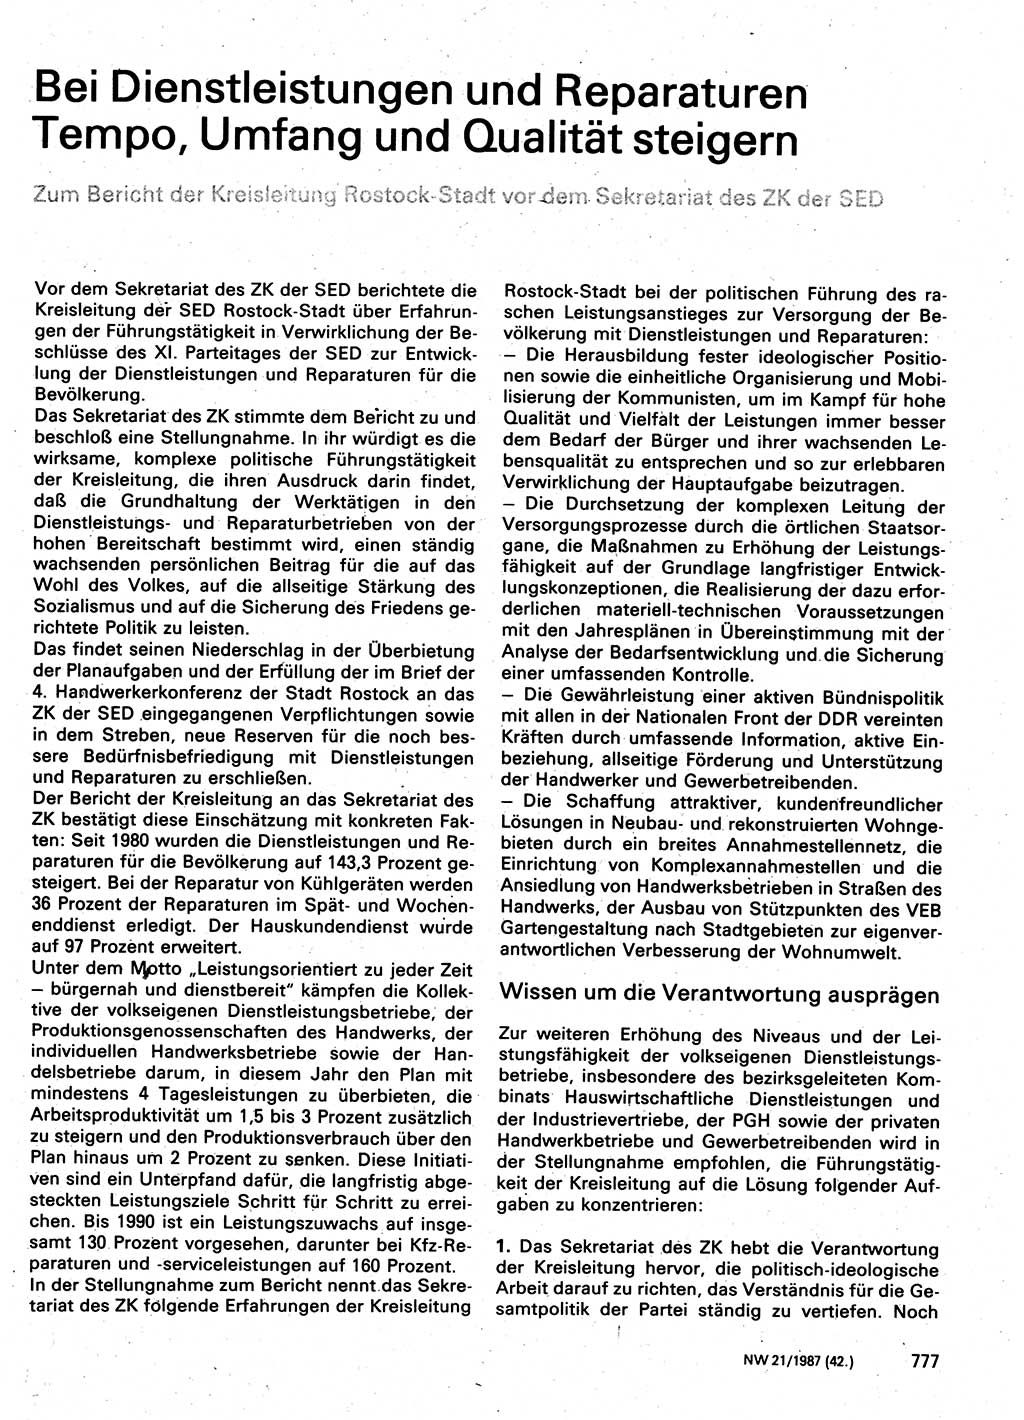 Neuer Weg (NW), Organ des Zentralkomitees (ZK) der SED (Sozialistische Einheitspartei Deutschlands) für Fragen des Parteilebens, 42. Jahrgang [Deutsche Demokratische Republik (DDR)] 1987, Seite 777 (NW ZK SED DDR 1987, S. 777)